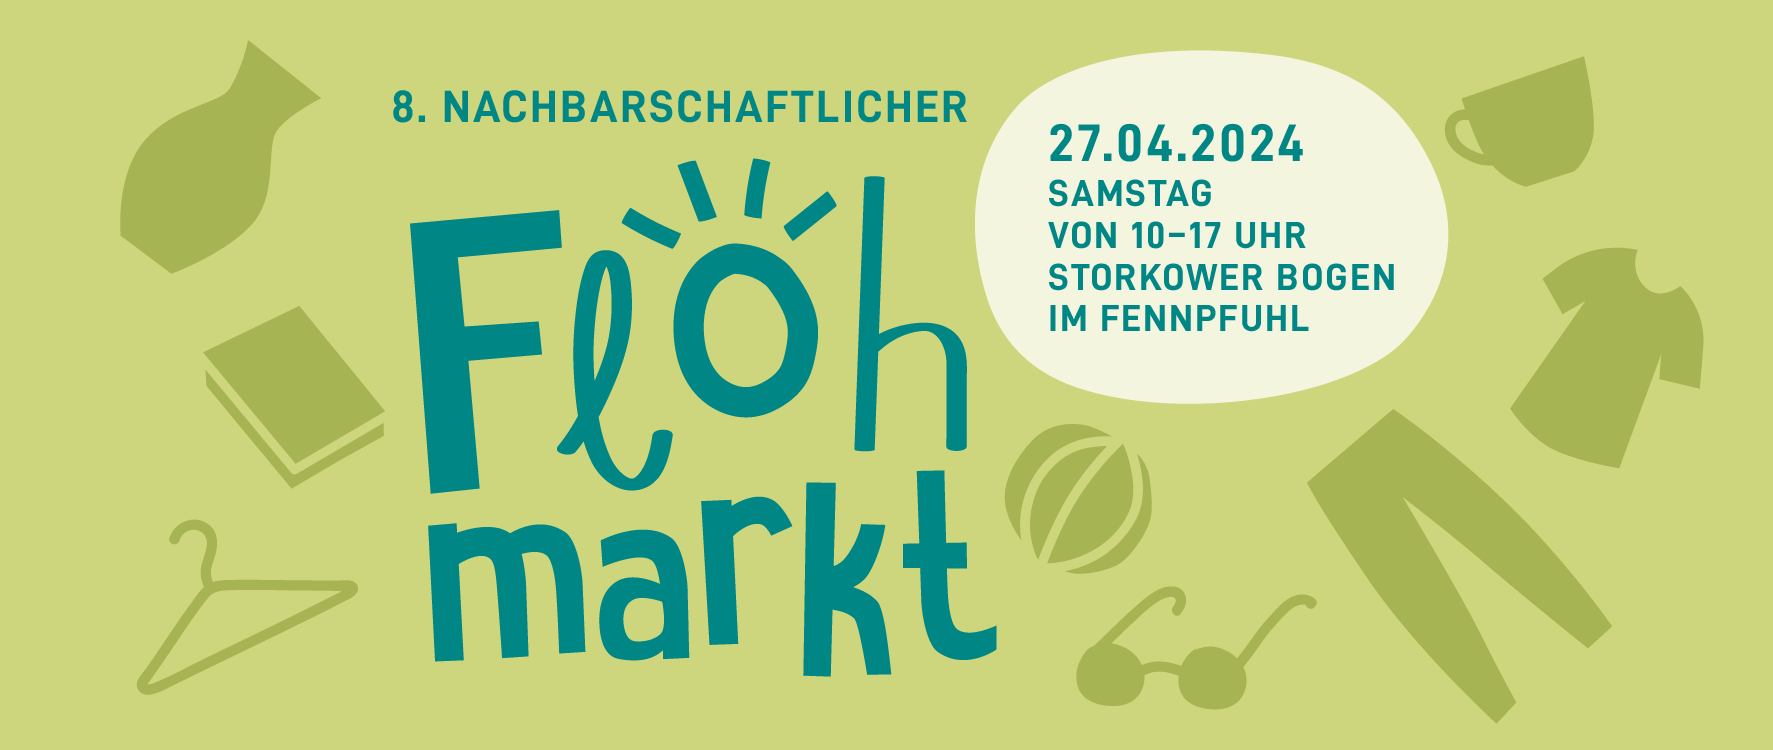 Bannerankündigung für den 8. Nachbarschaftlichen Flohmarkt am Storkower Bogen im Fennpfuhl in Berlin Lichtenberg am 27.04.2024